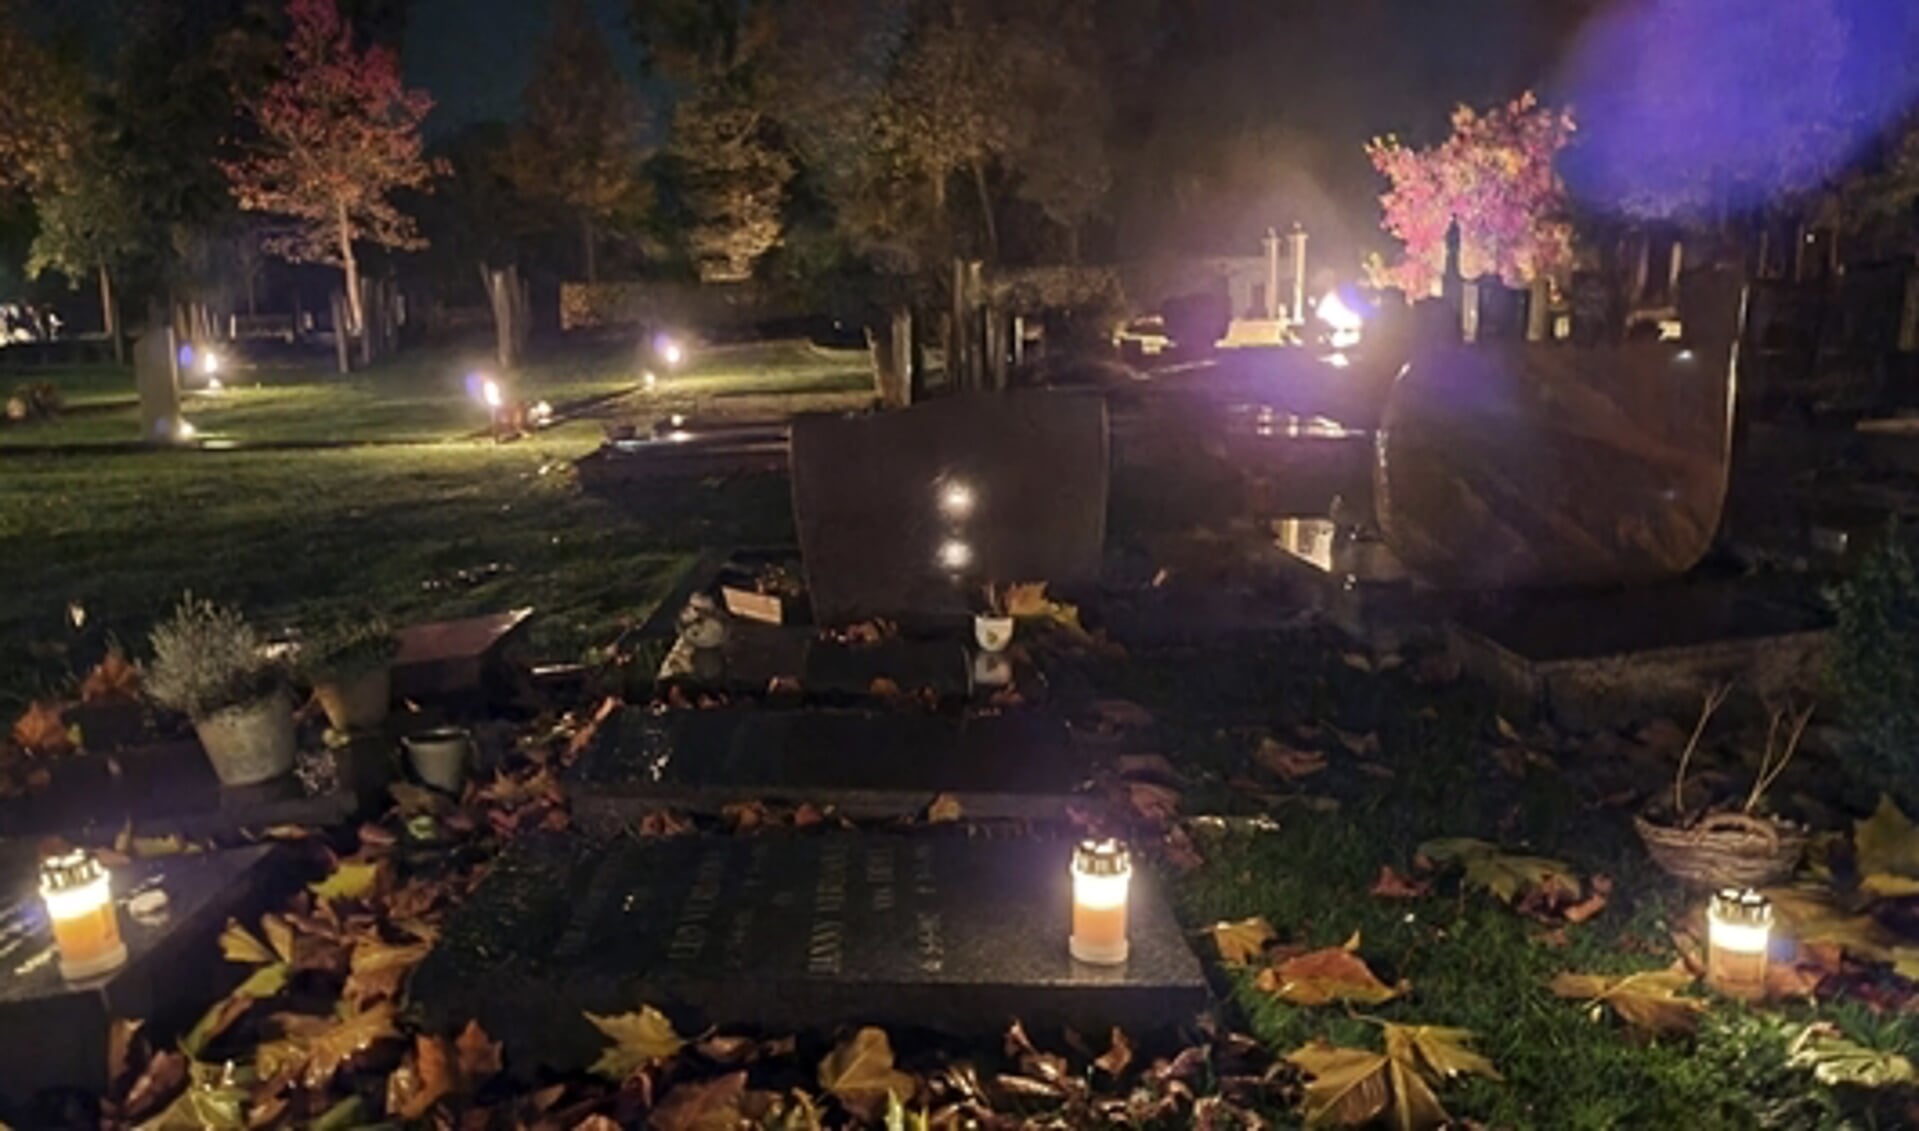 De begraafplaats in Gieten was sfeervol verlicht met kaarsen en fakkels. (eigen foto)